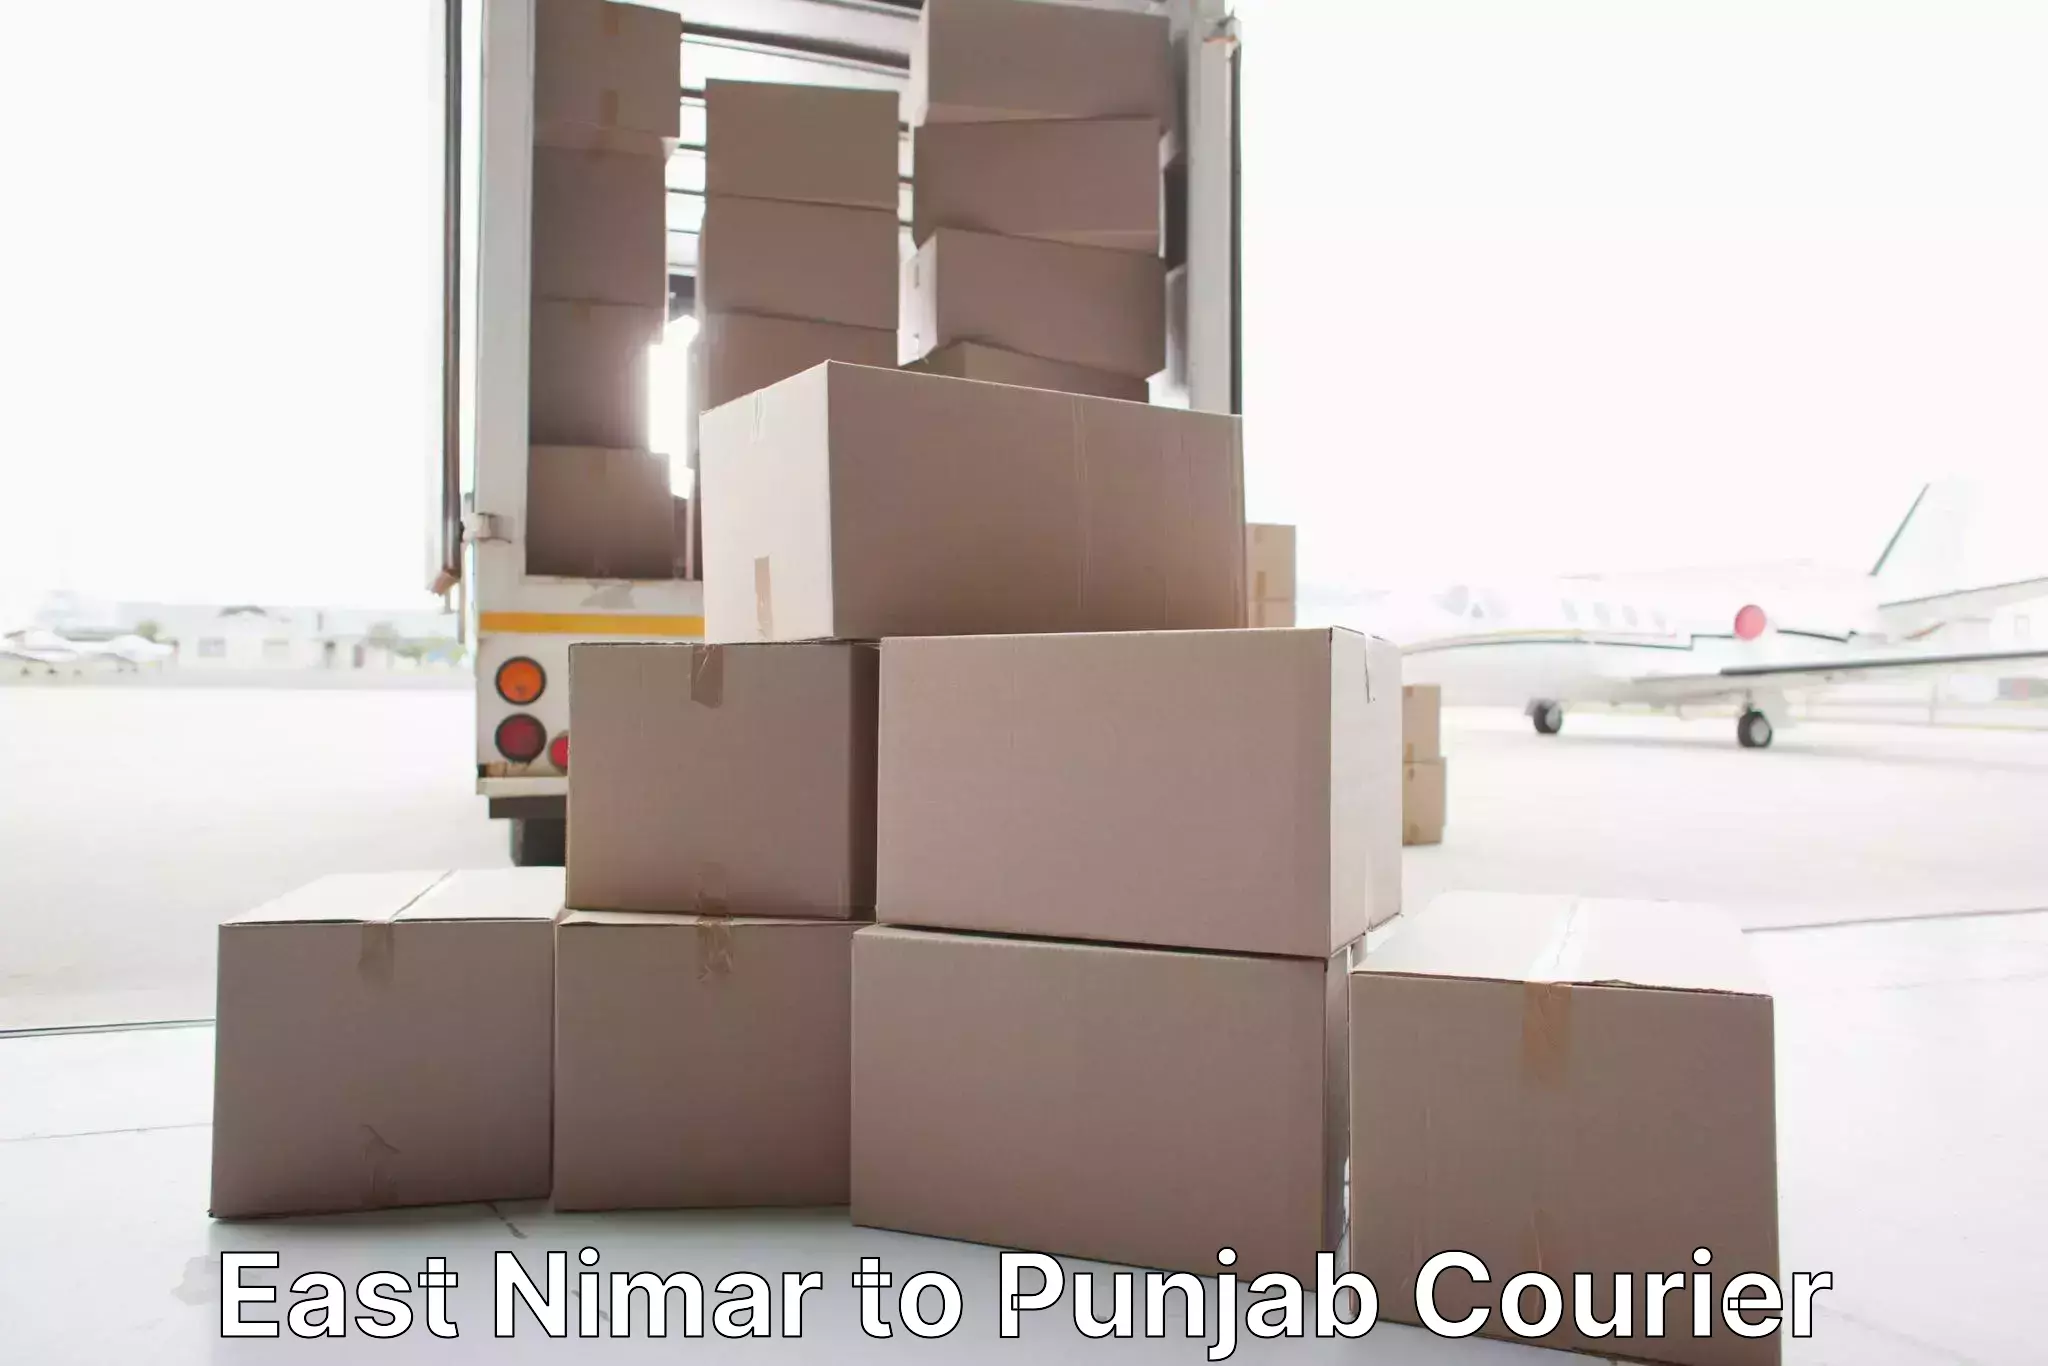 Furniture delivery service East Nimar to Jalandhar